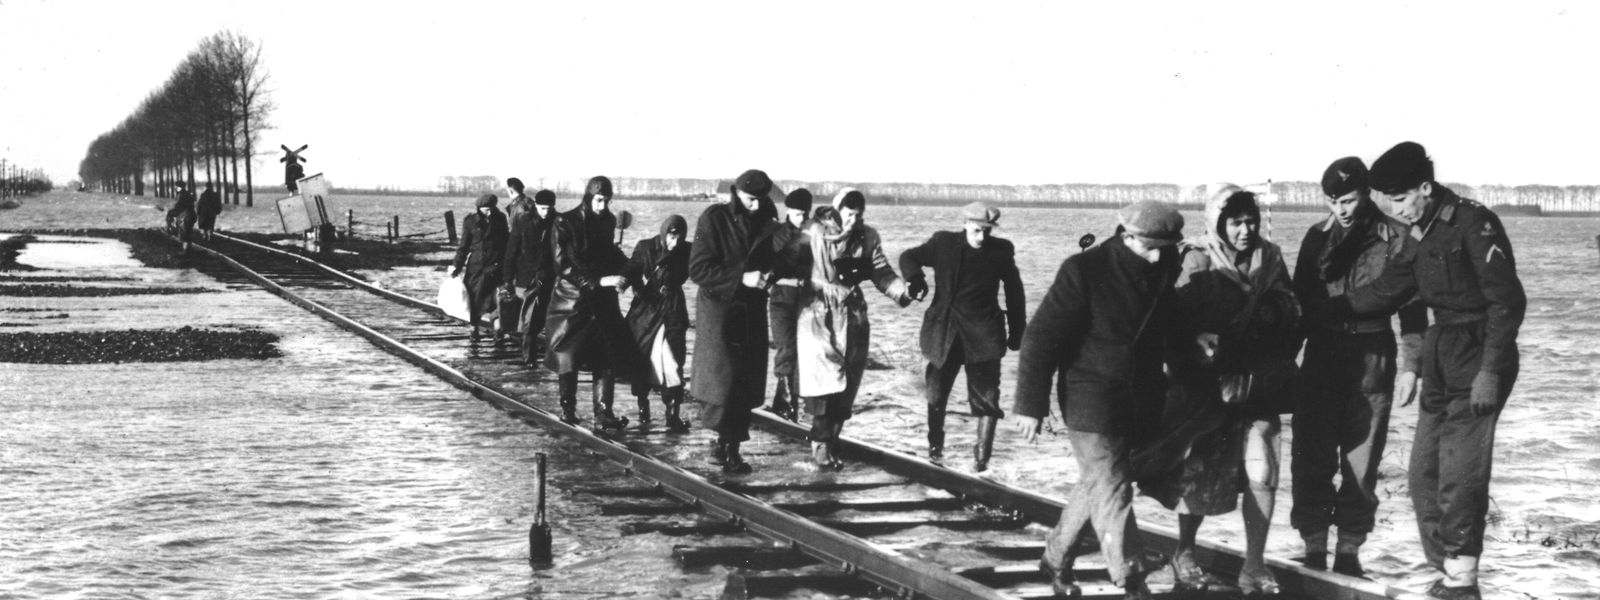 Bewohner des niederländischen Überschwemmungsgebietes in Zeeland bringen sich über einen Schienenstrang in Sicherheit. Die Sturmflut durchbrach am 1. Februar zahlreiche Deichbefestigungen und forderte mehr als 1.600 Opfer. 